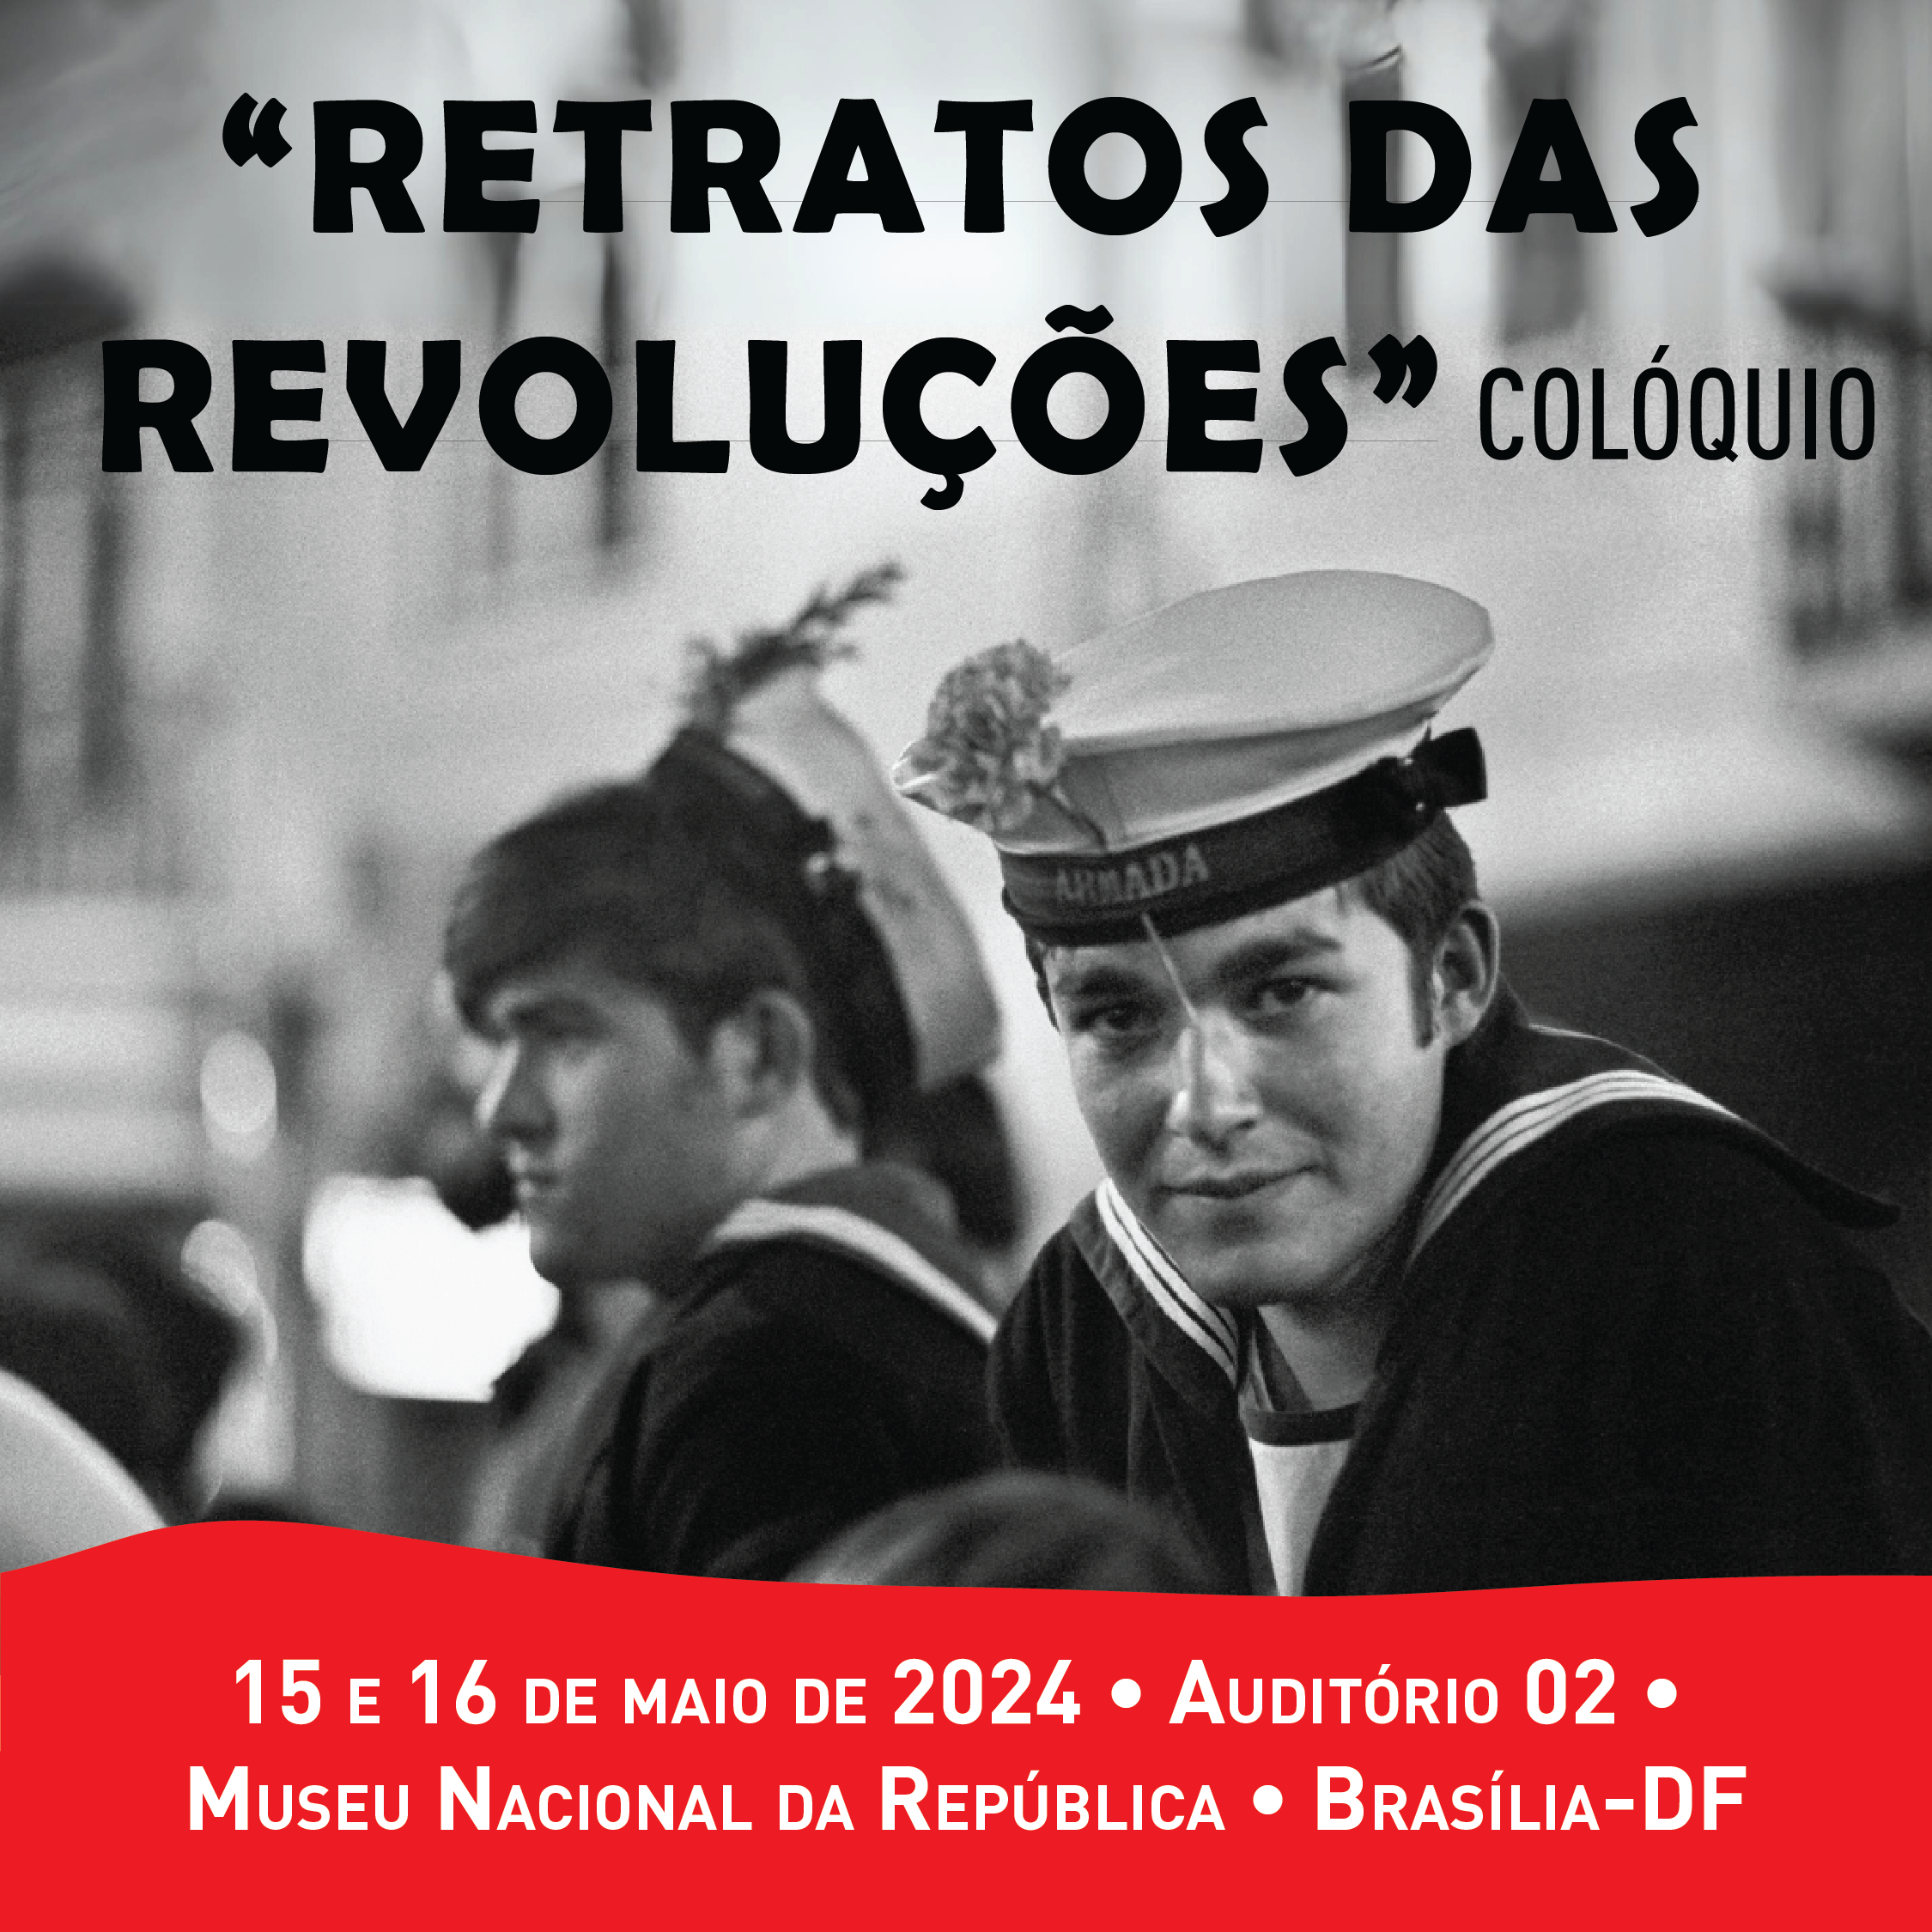 Capa do Evento Brasília: Colóquio “Retratos das Revoluções”